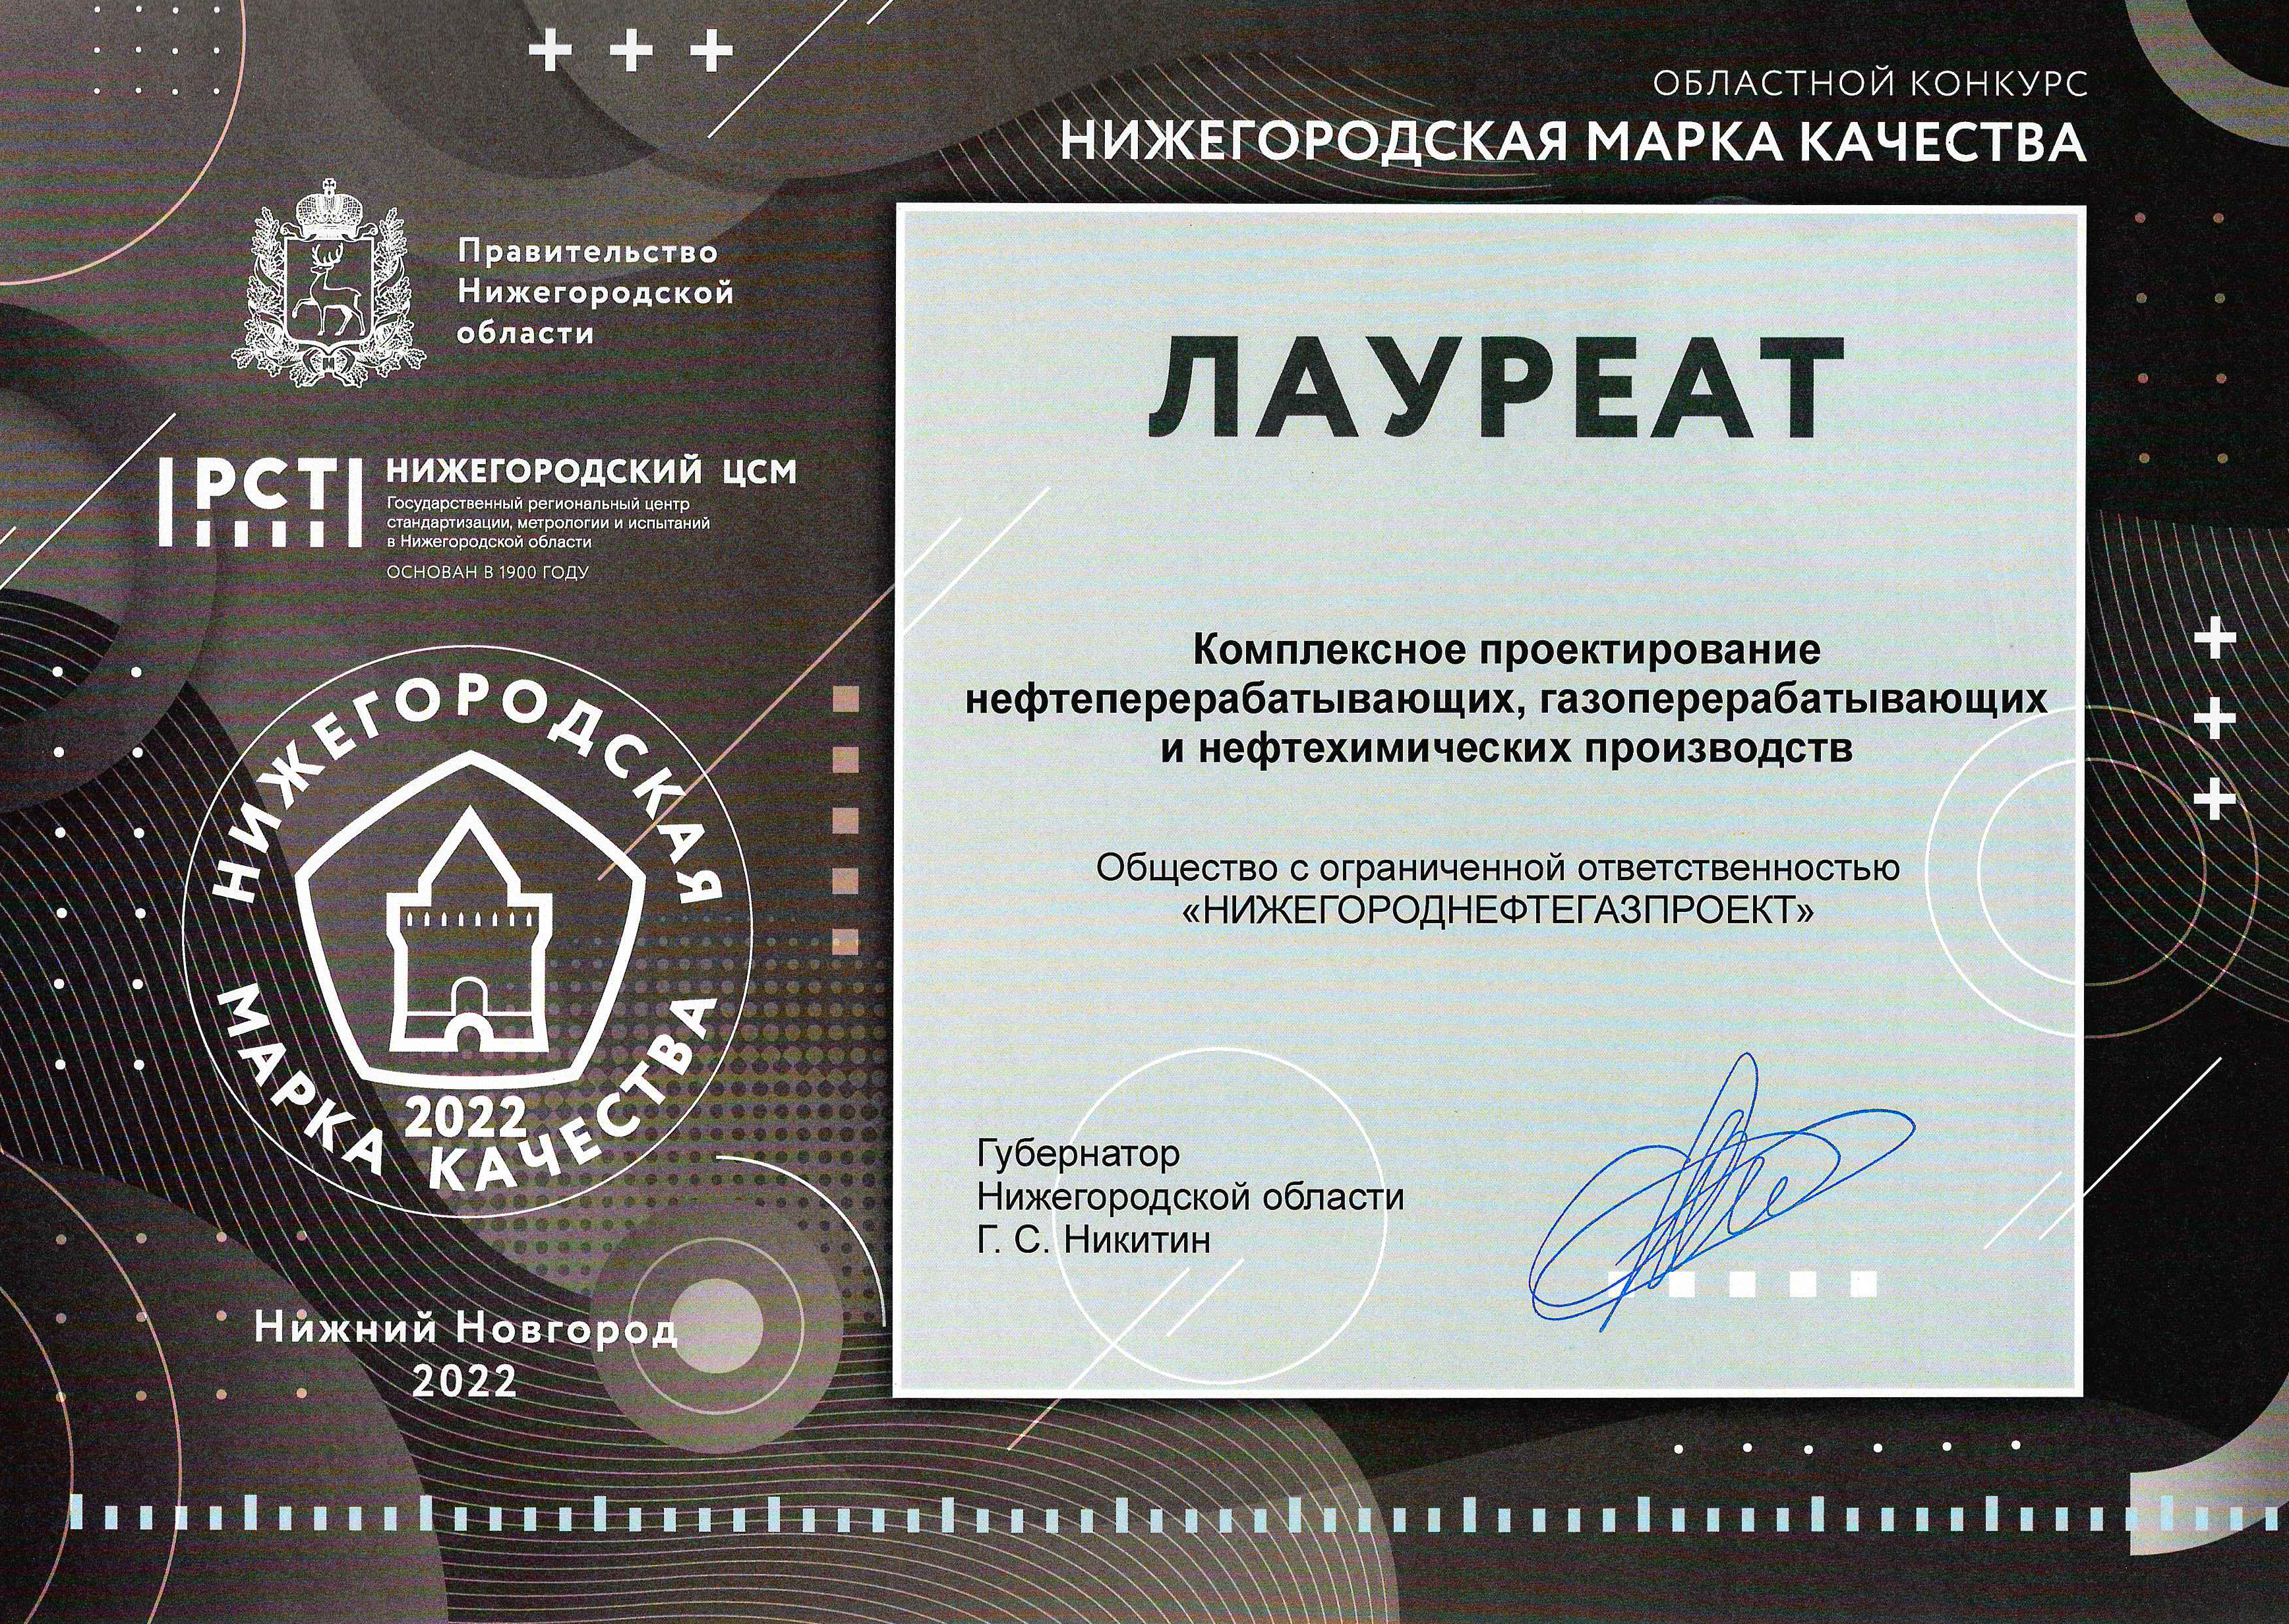 ООО «ННГП» - лауреат областного конкурса «Нижегородская марка качества - 2022»!